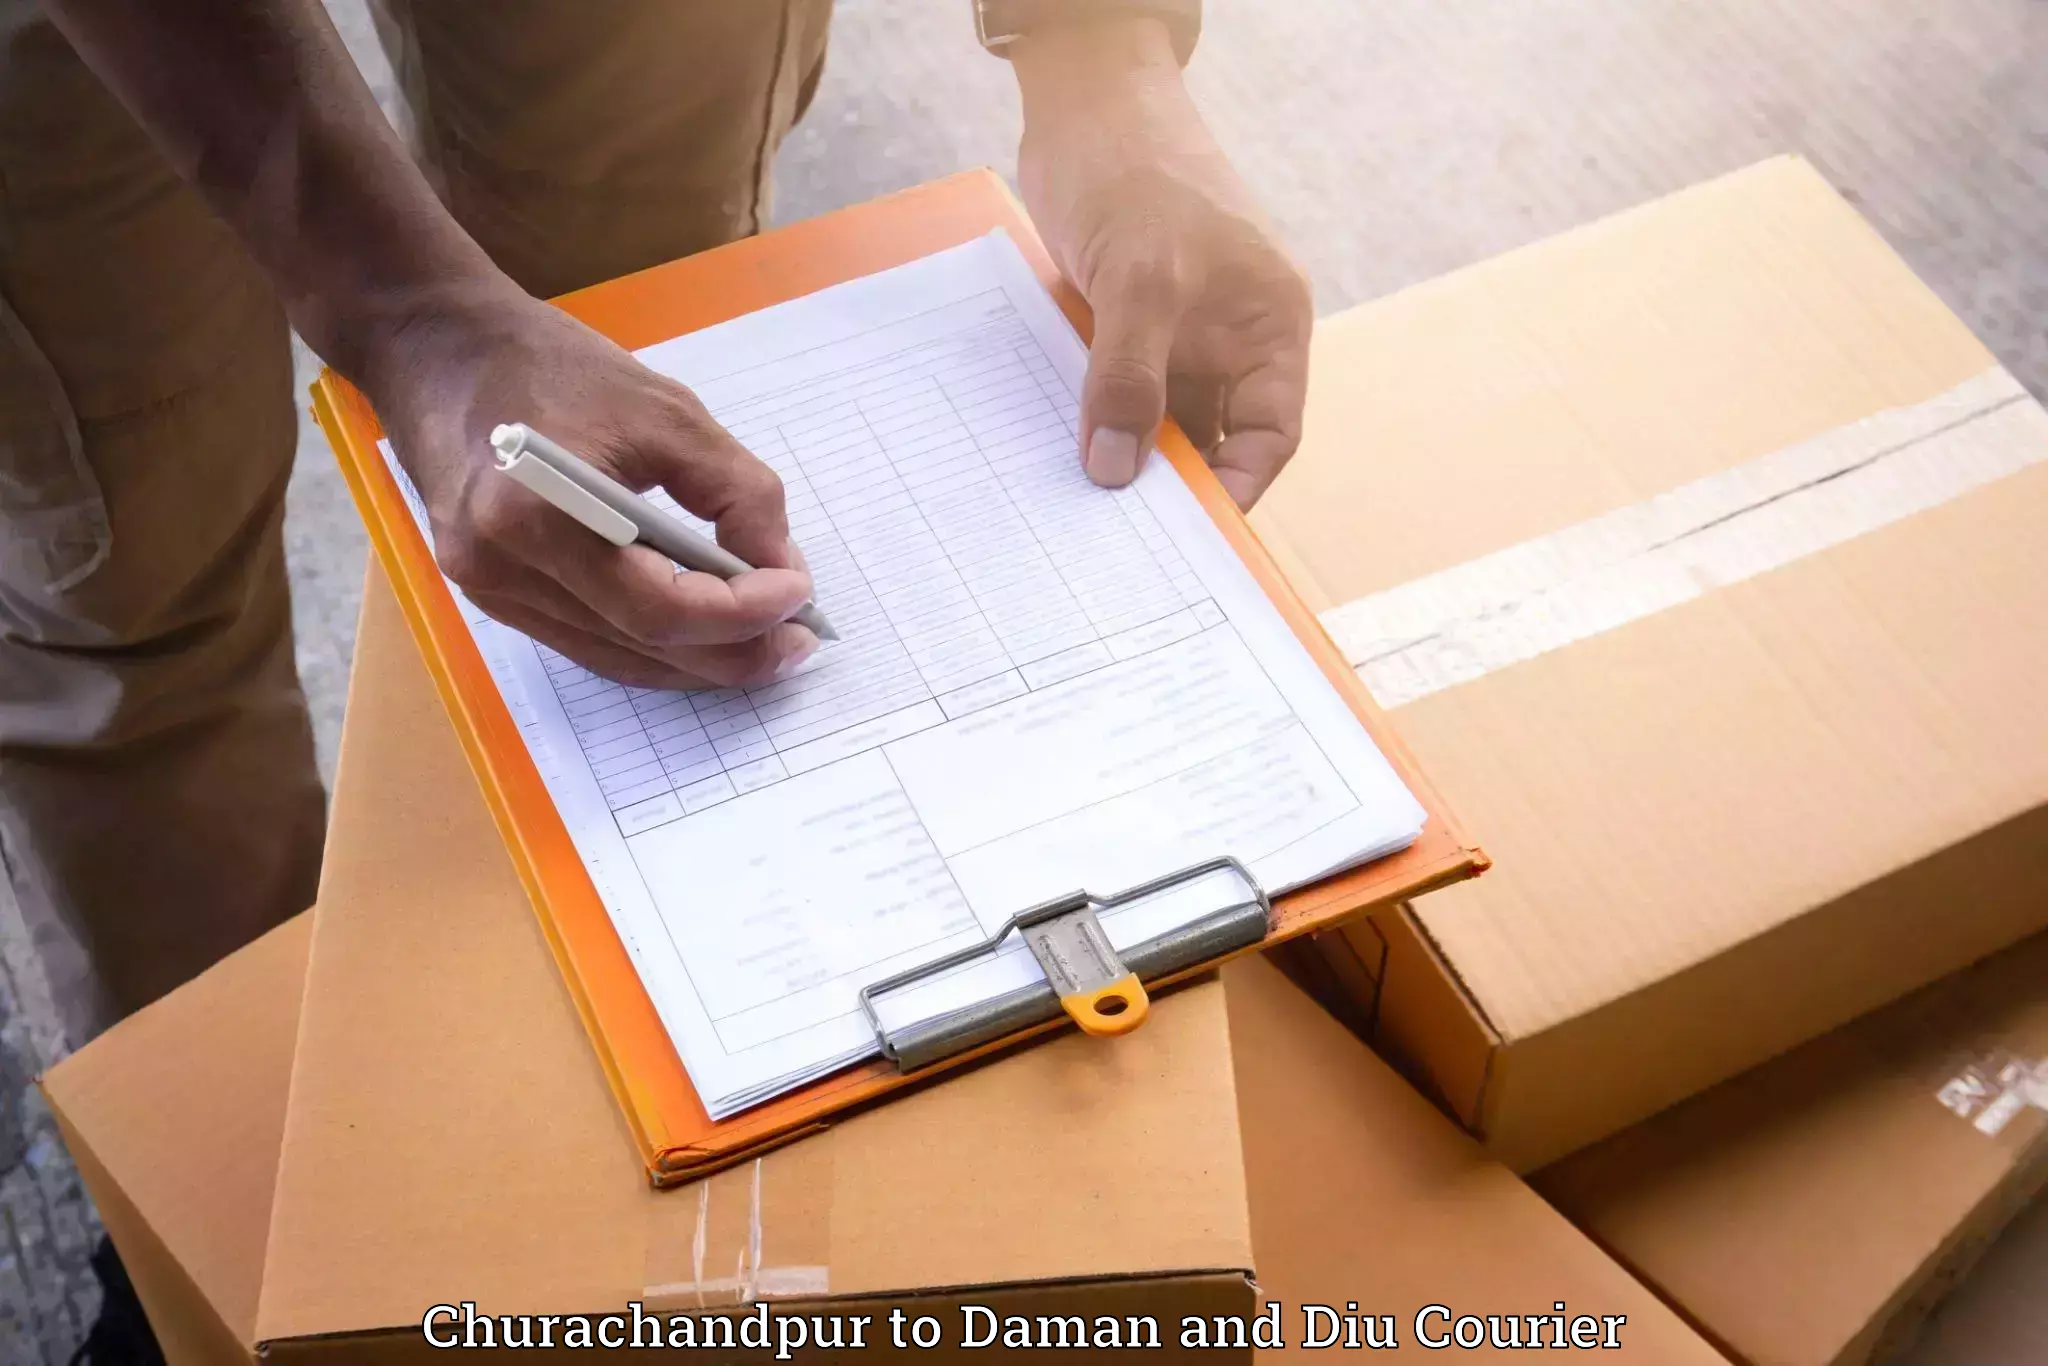 Furniture shipping services Churachandpur to Diu